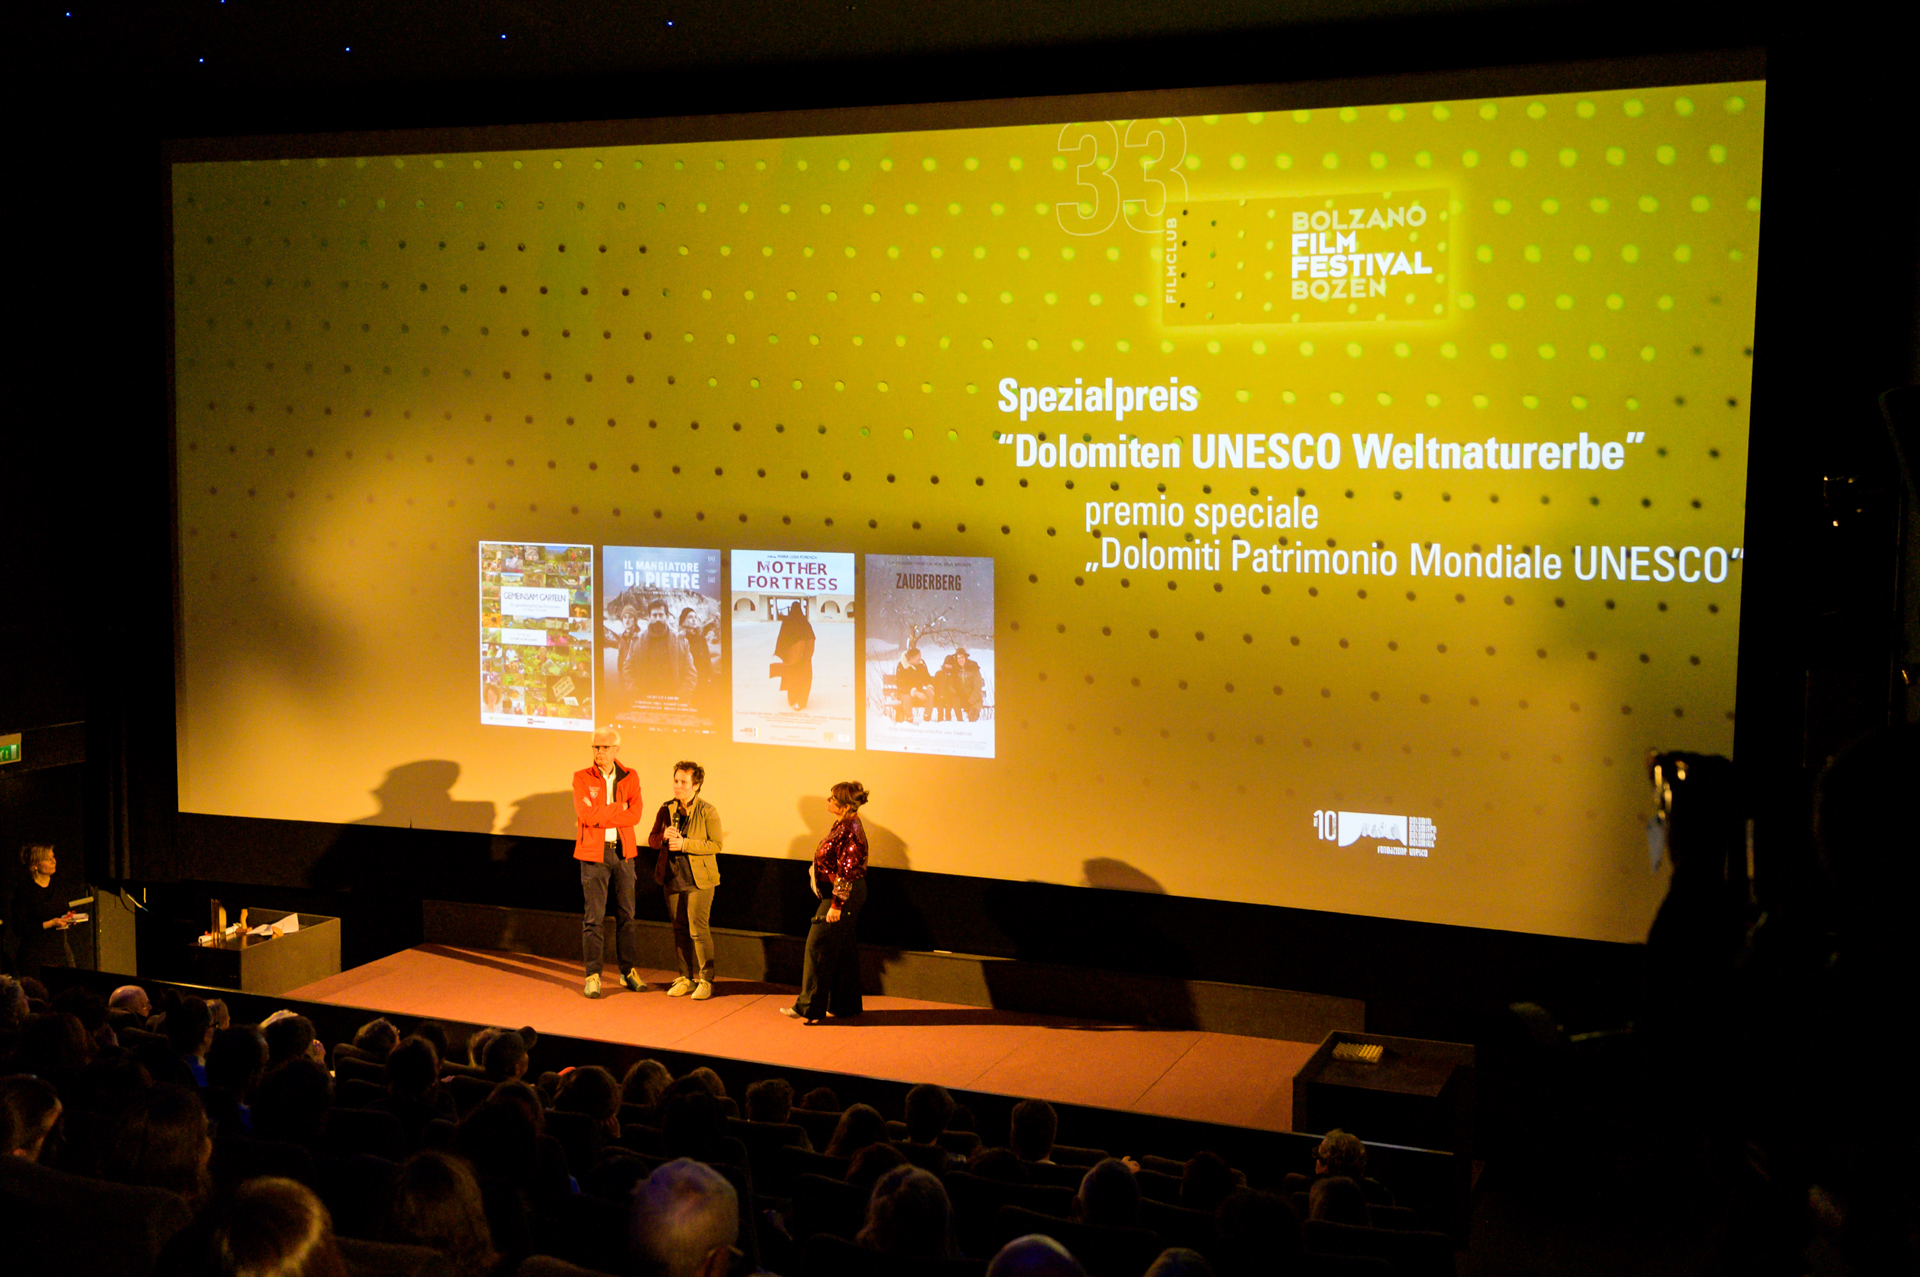 premio-speciale-dolomiti-unesco-bolzno-filmfestival-bozen.